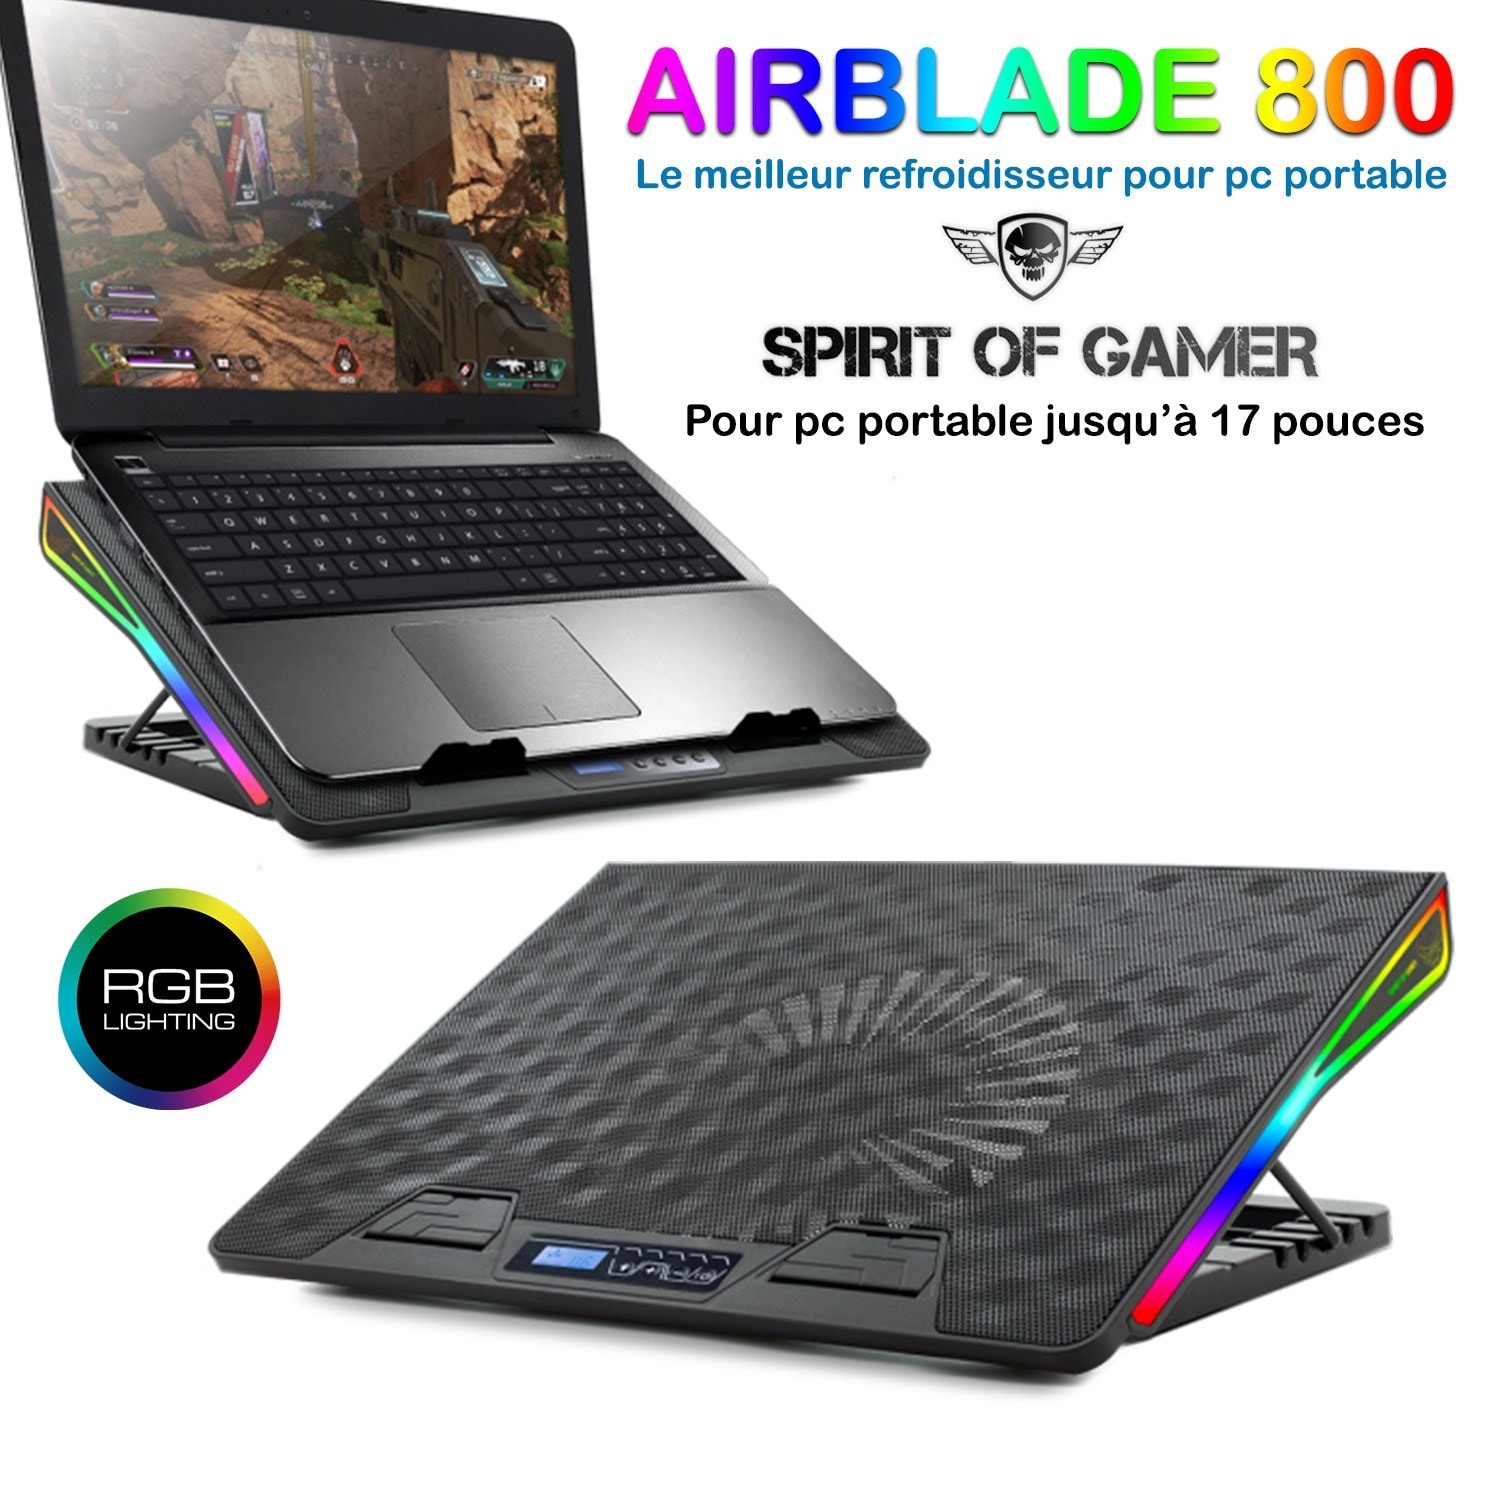 Refroidisseur PC portable jusqu'à 17 Spirit of gamer AirBlade 800